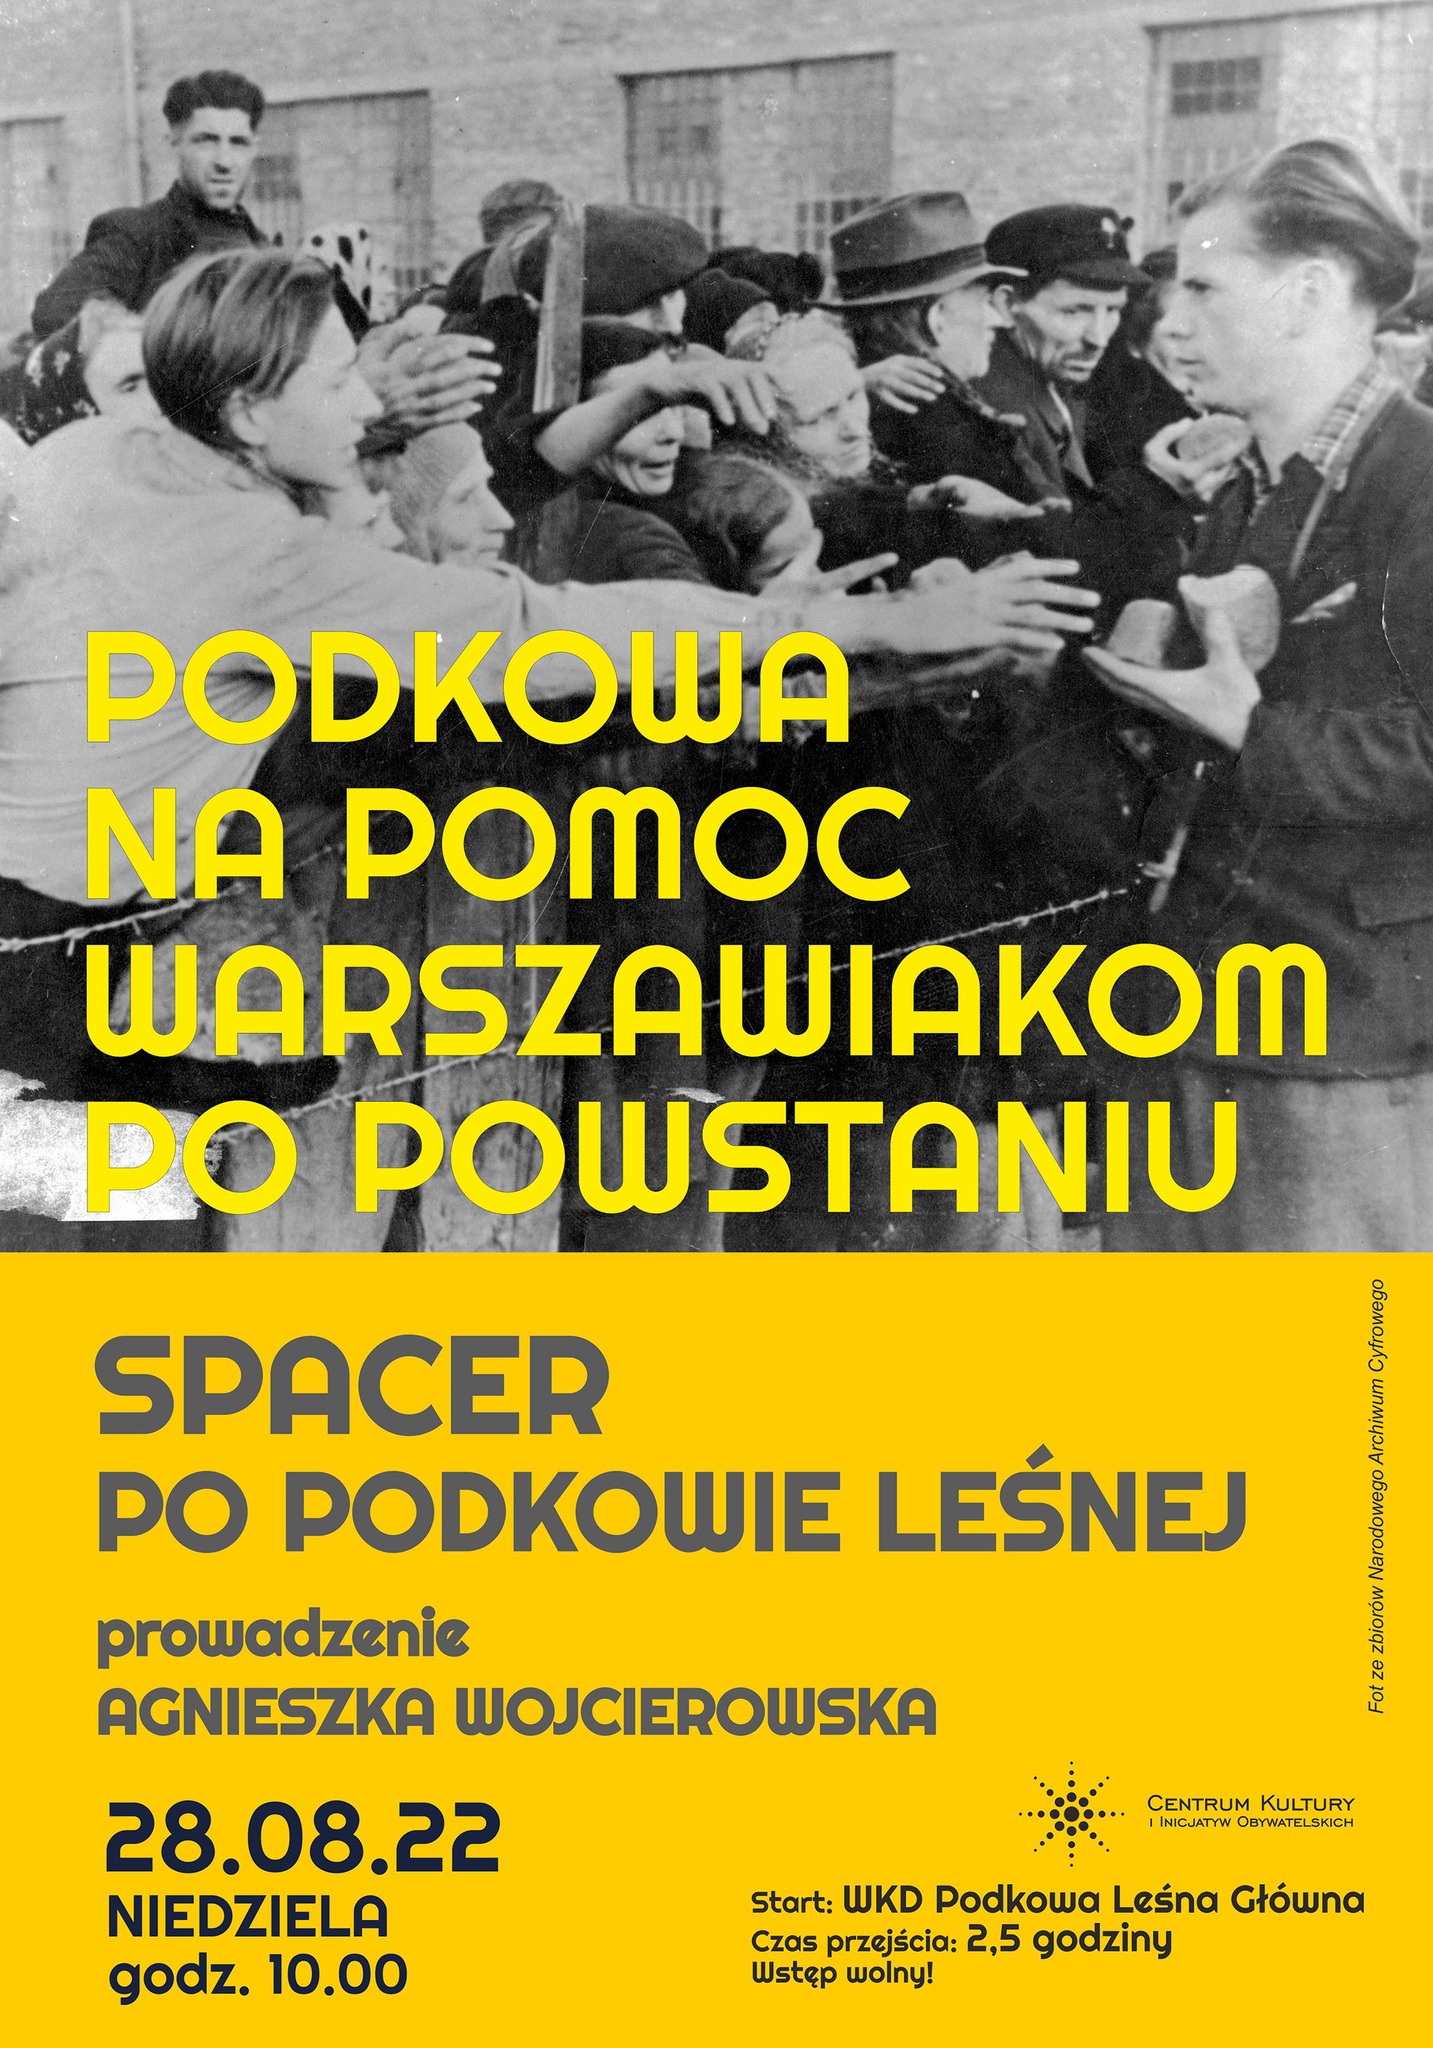 You are currently viewing Podkowa na pomoc warszawiakom po Powstaniu